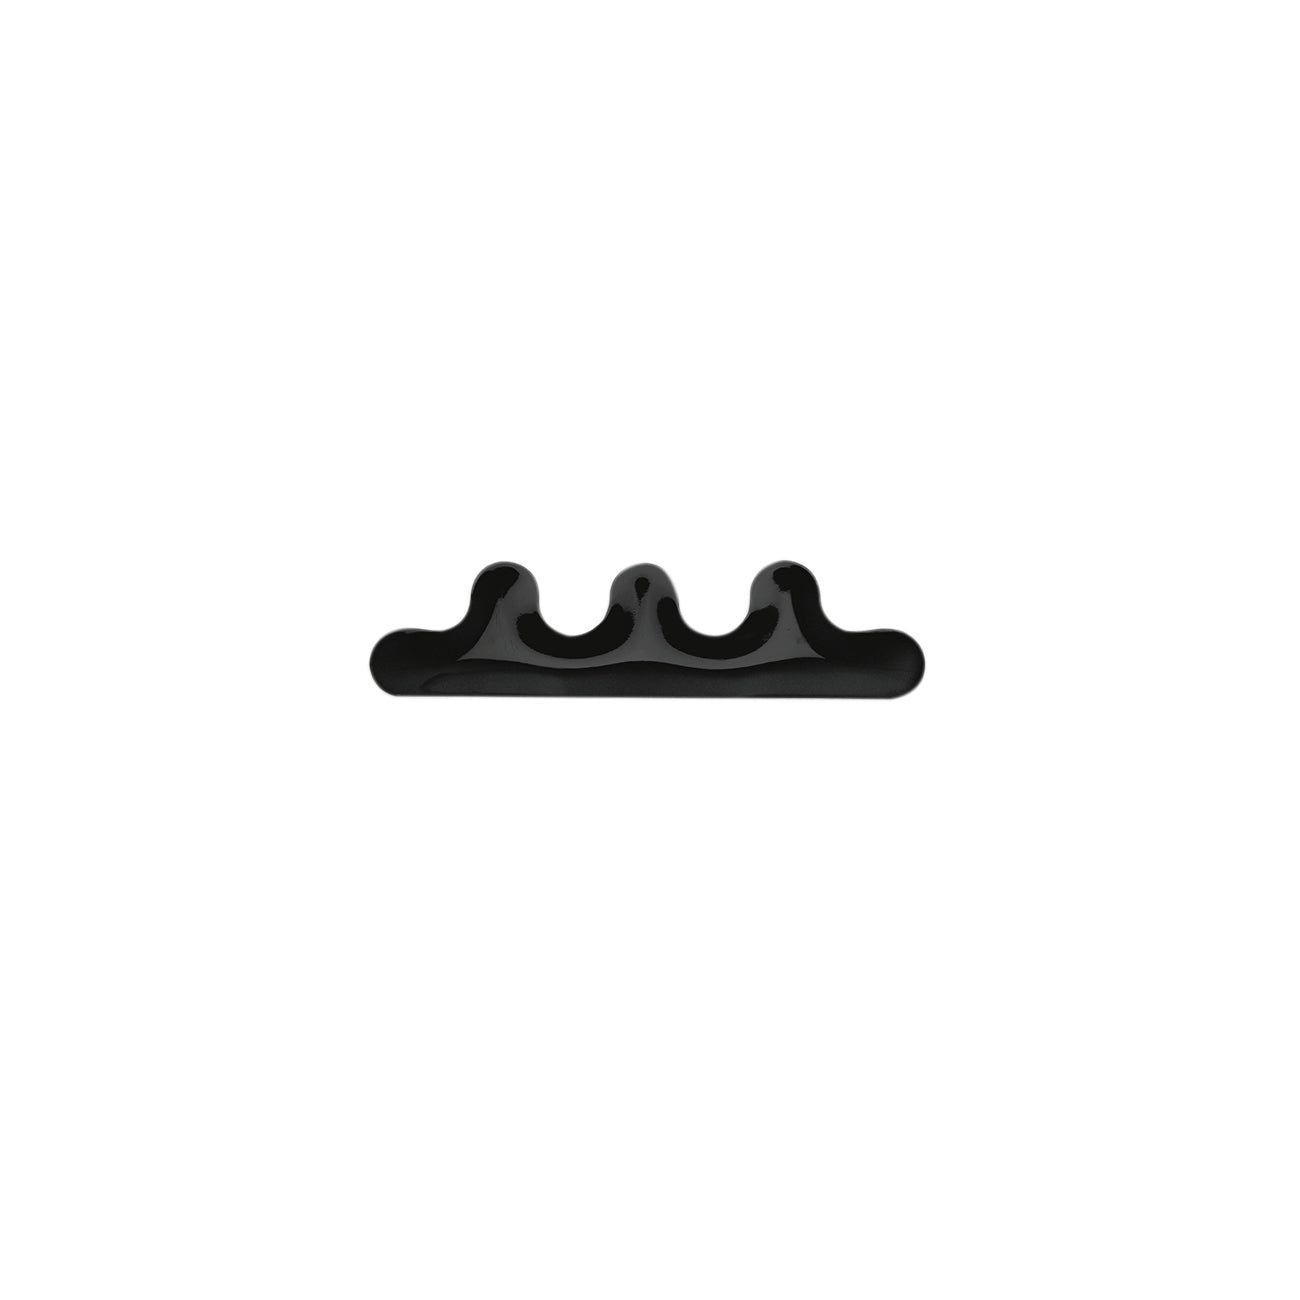 Kamm Hanger: Kamm 3 + Black Glossy Carbon Steel